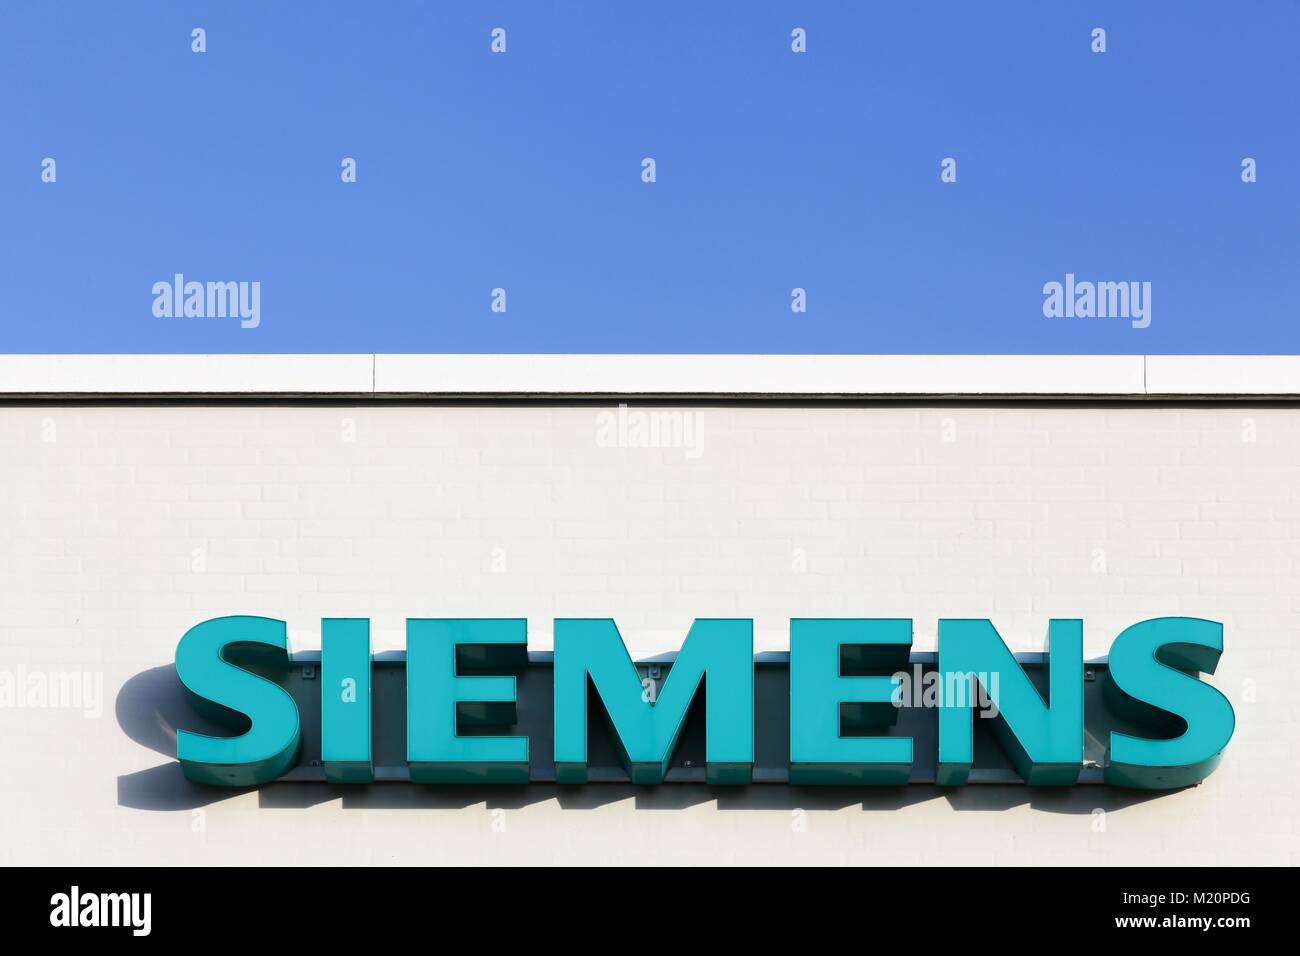 Tilst, Danemark - Février 14, 2016 : siemens logo sur une façade. Siemens est une multinationale allemande Banque D'Images